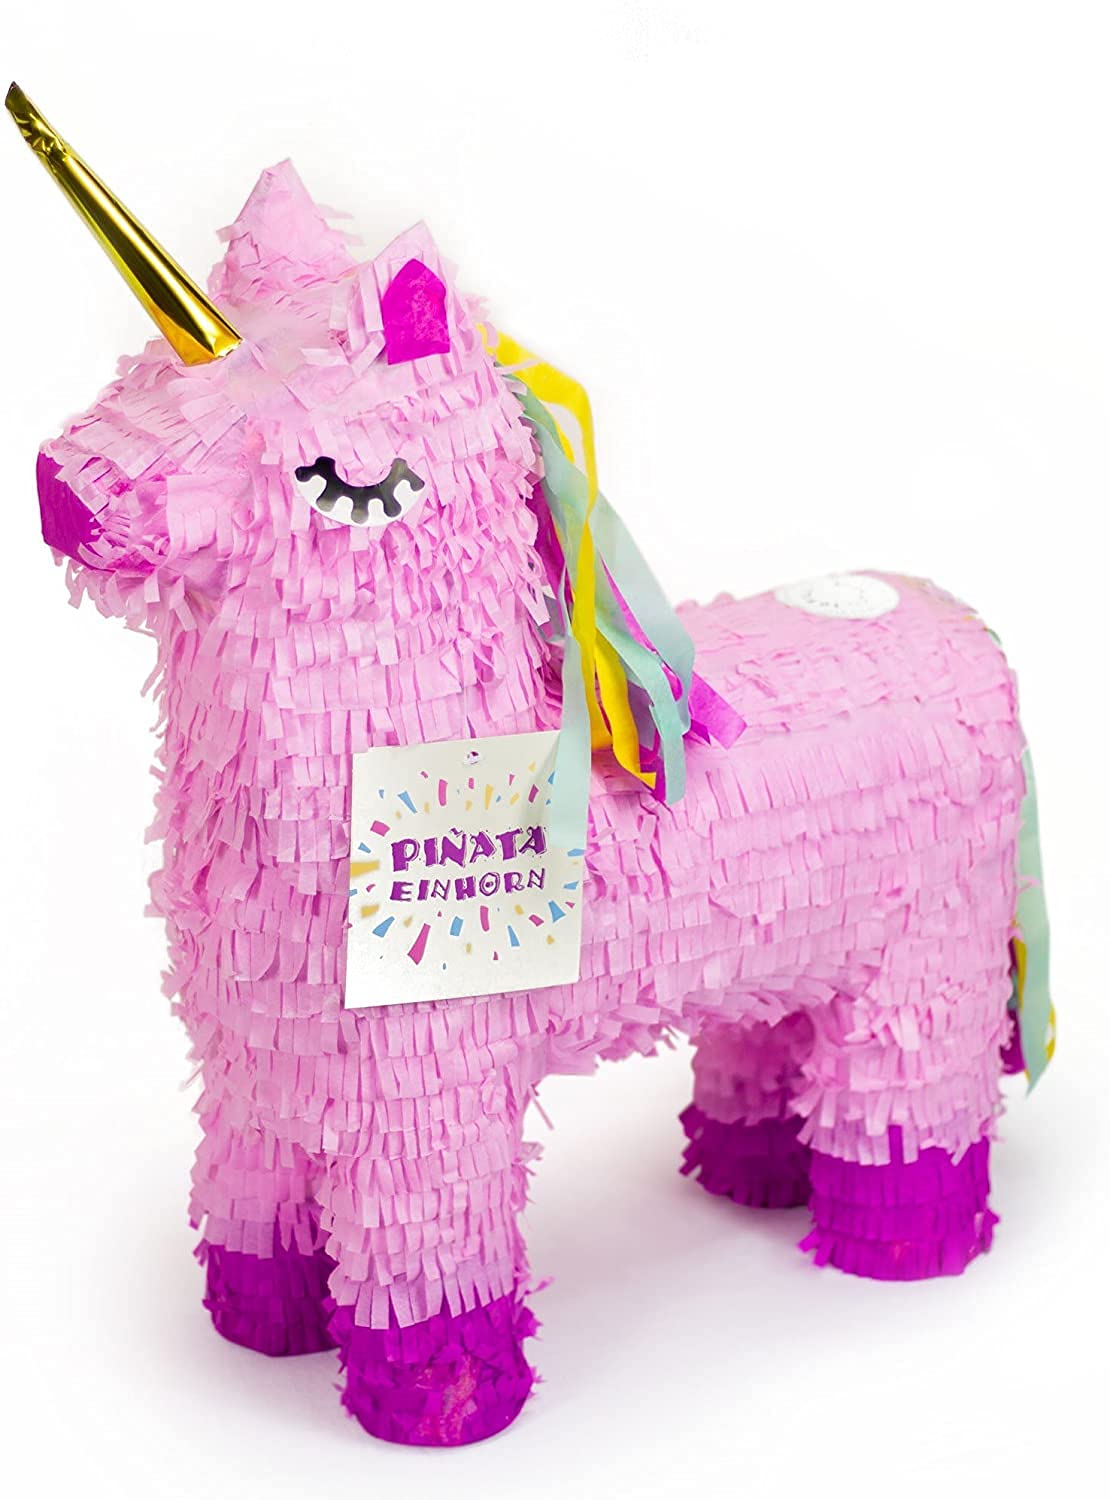 Carpeta Einhorn Pinata - 57x37cm groß in Rosa/Pink - ungefüllt - Ideal zum Befüllen mit Süßigkeiten und Geschenken - Piñata für Kindergeburtstag Spiel, Geschenkidee, Party, Hochzeit